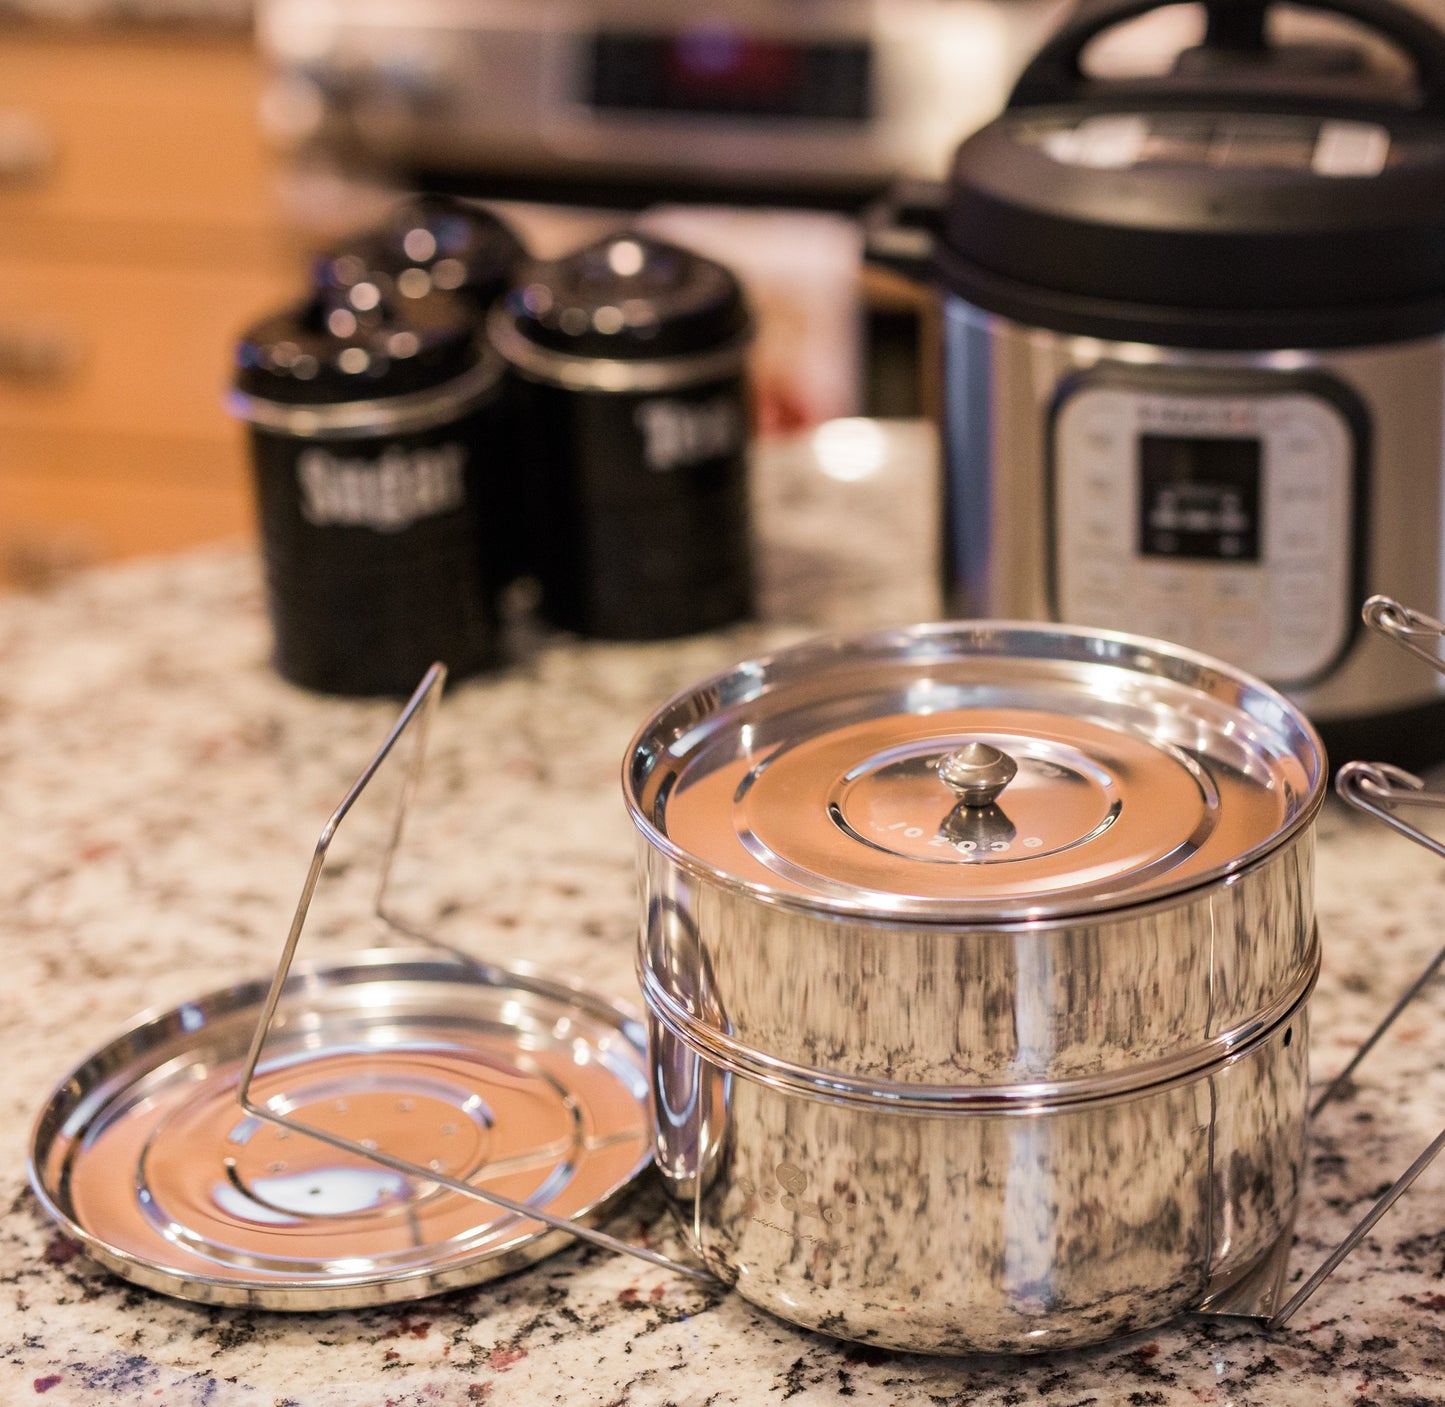 Instant Pot Insert Pans, 2 Tier for 6 Qt / 8 Qt Pressure Cookers by ecozoi